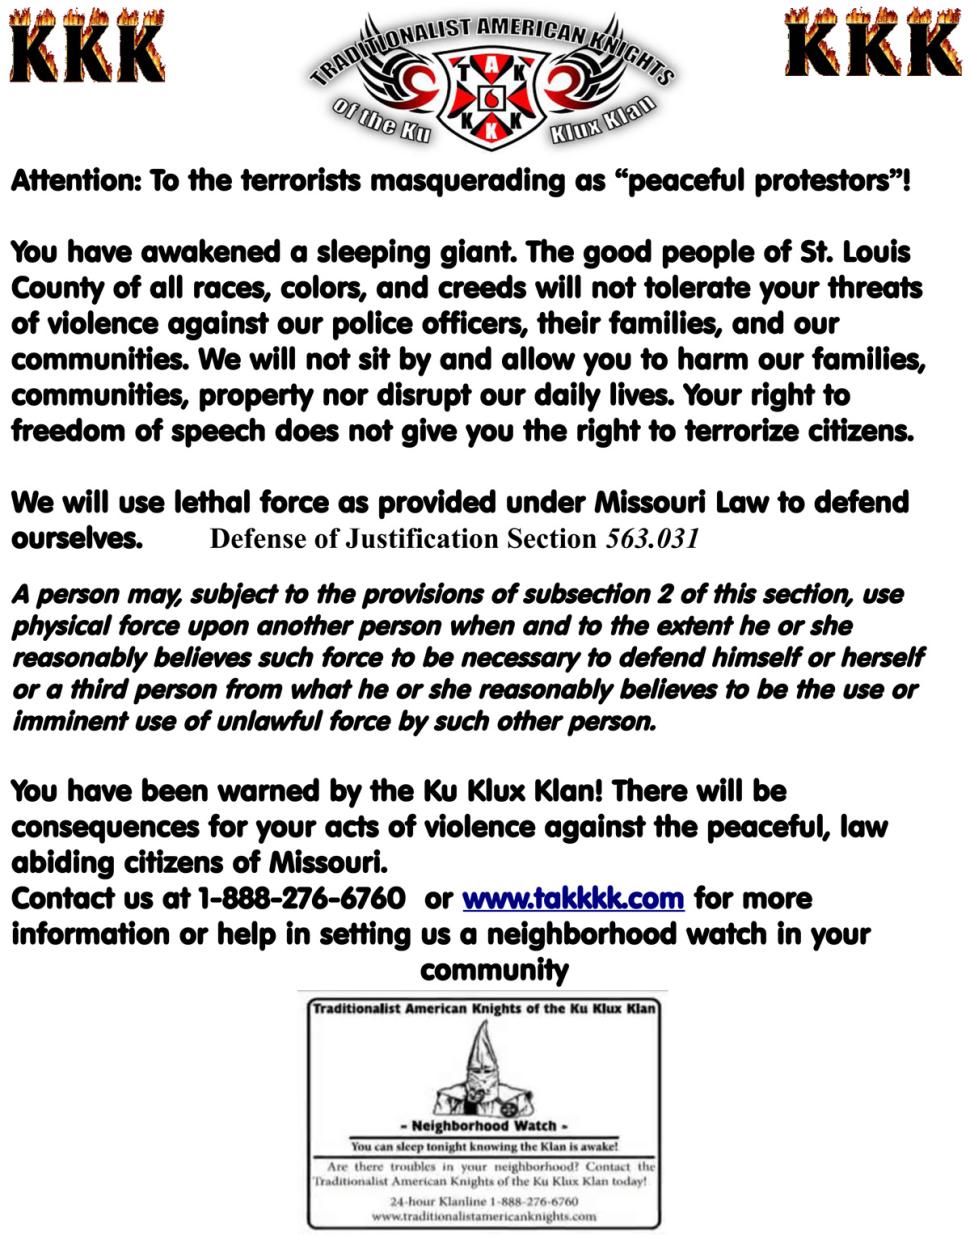 KKK flyer